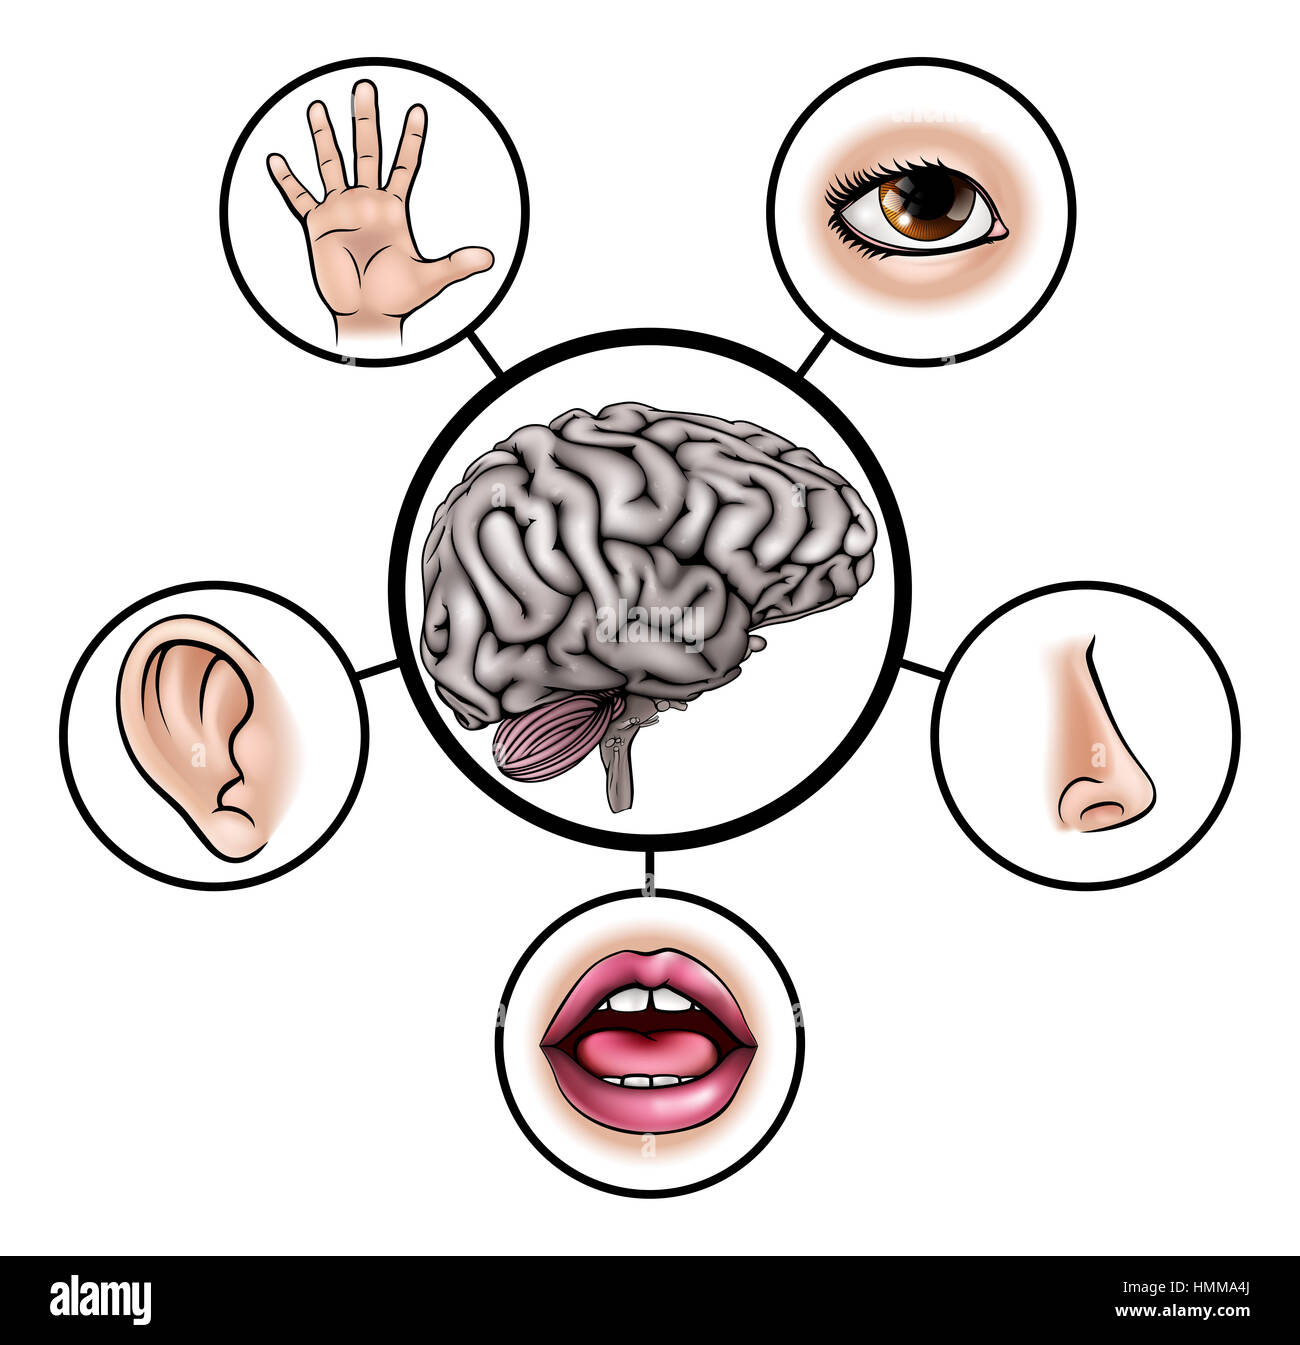 Una scienza istruzione illustrazione di icone che rappresentano i cinque sensi attaccata al cervello centrale Foto Stock